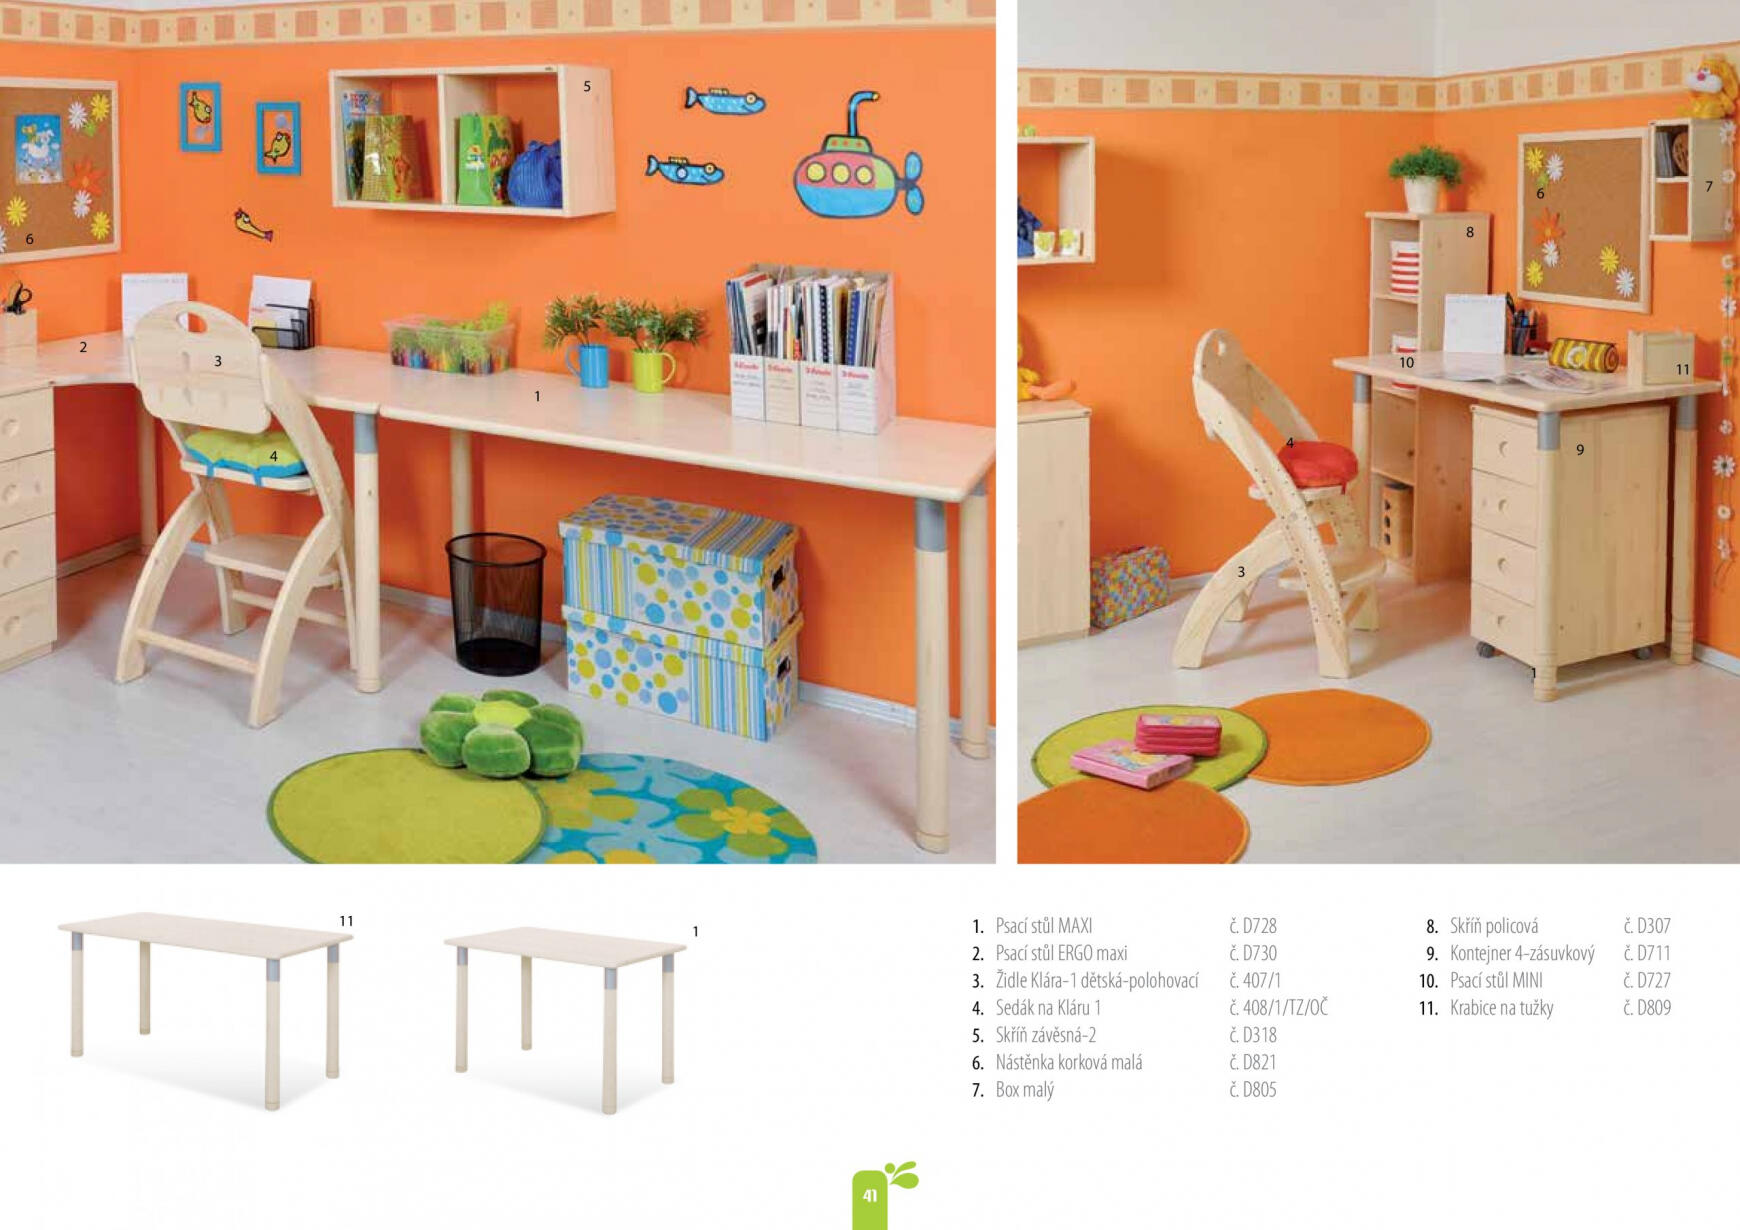 domestav - Domestav - Dětský nábytek platný od 01.01.2023 - page: 41